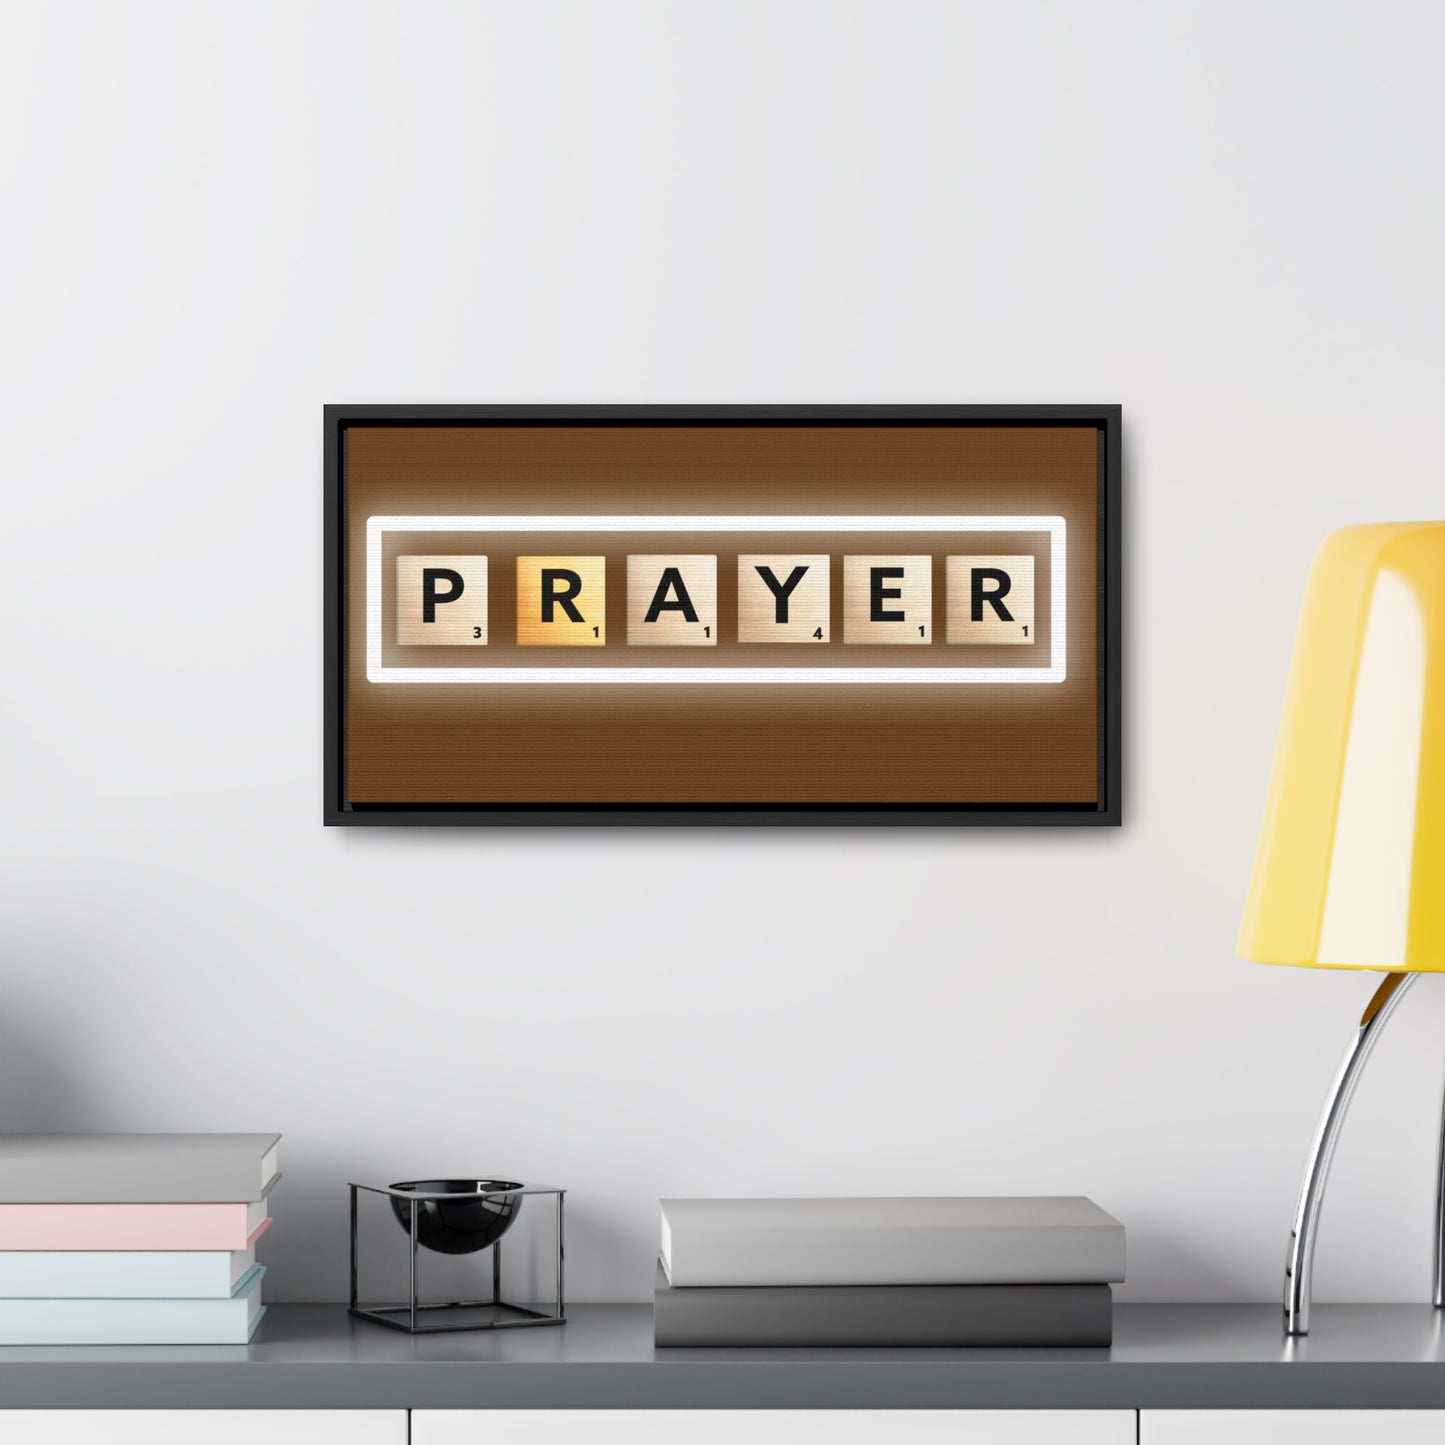 Christian Wall Art: Prayer (Floating Frame)